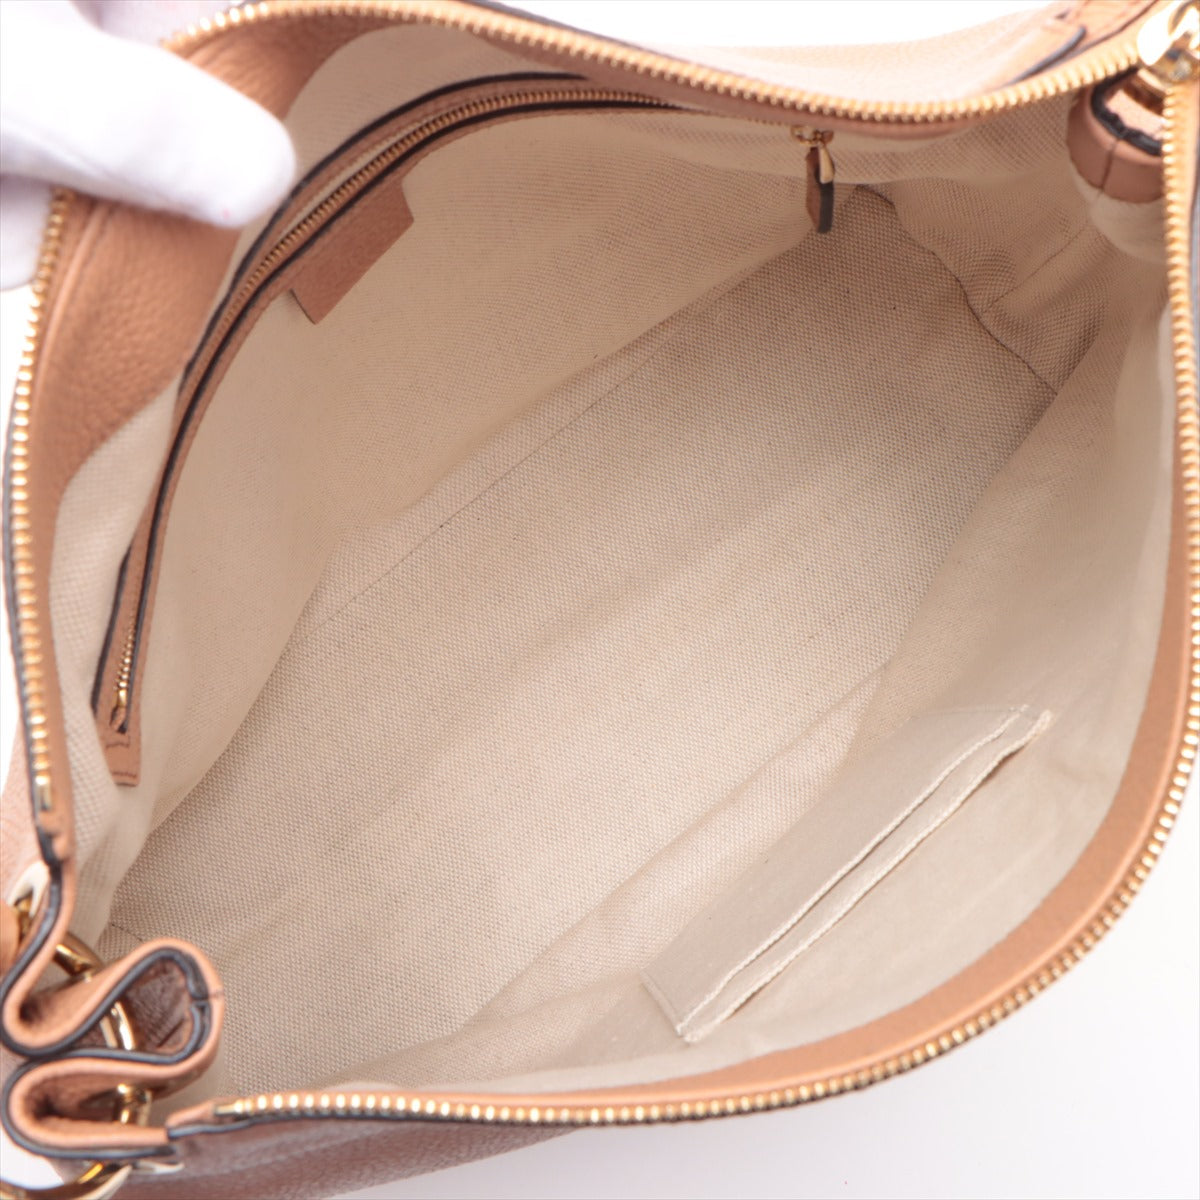 Gucci Soho Leather 2WAY Shoulder Bag Pink Beige 536194